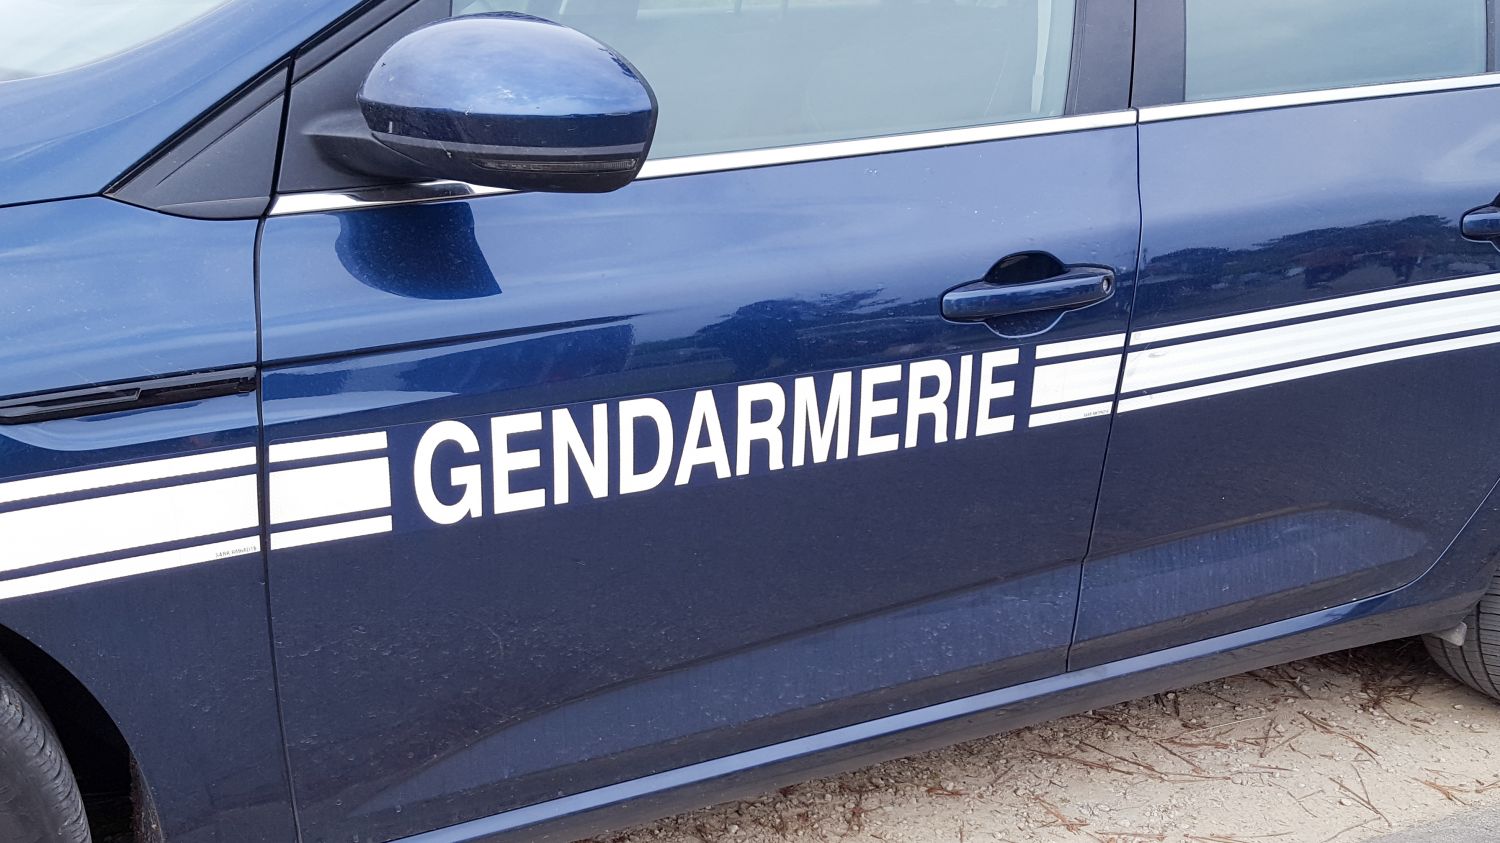 La gendarmerie de Forbach déménage à Tenteling